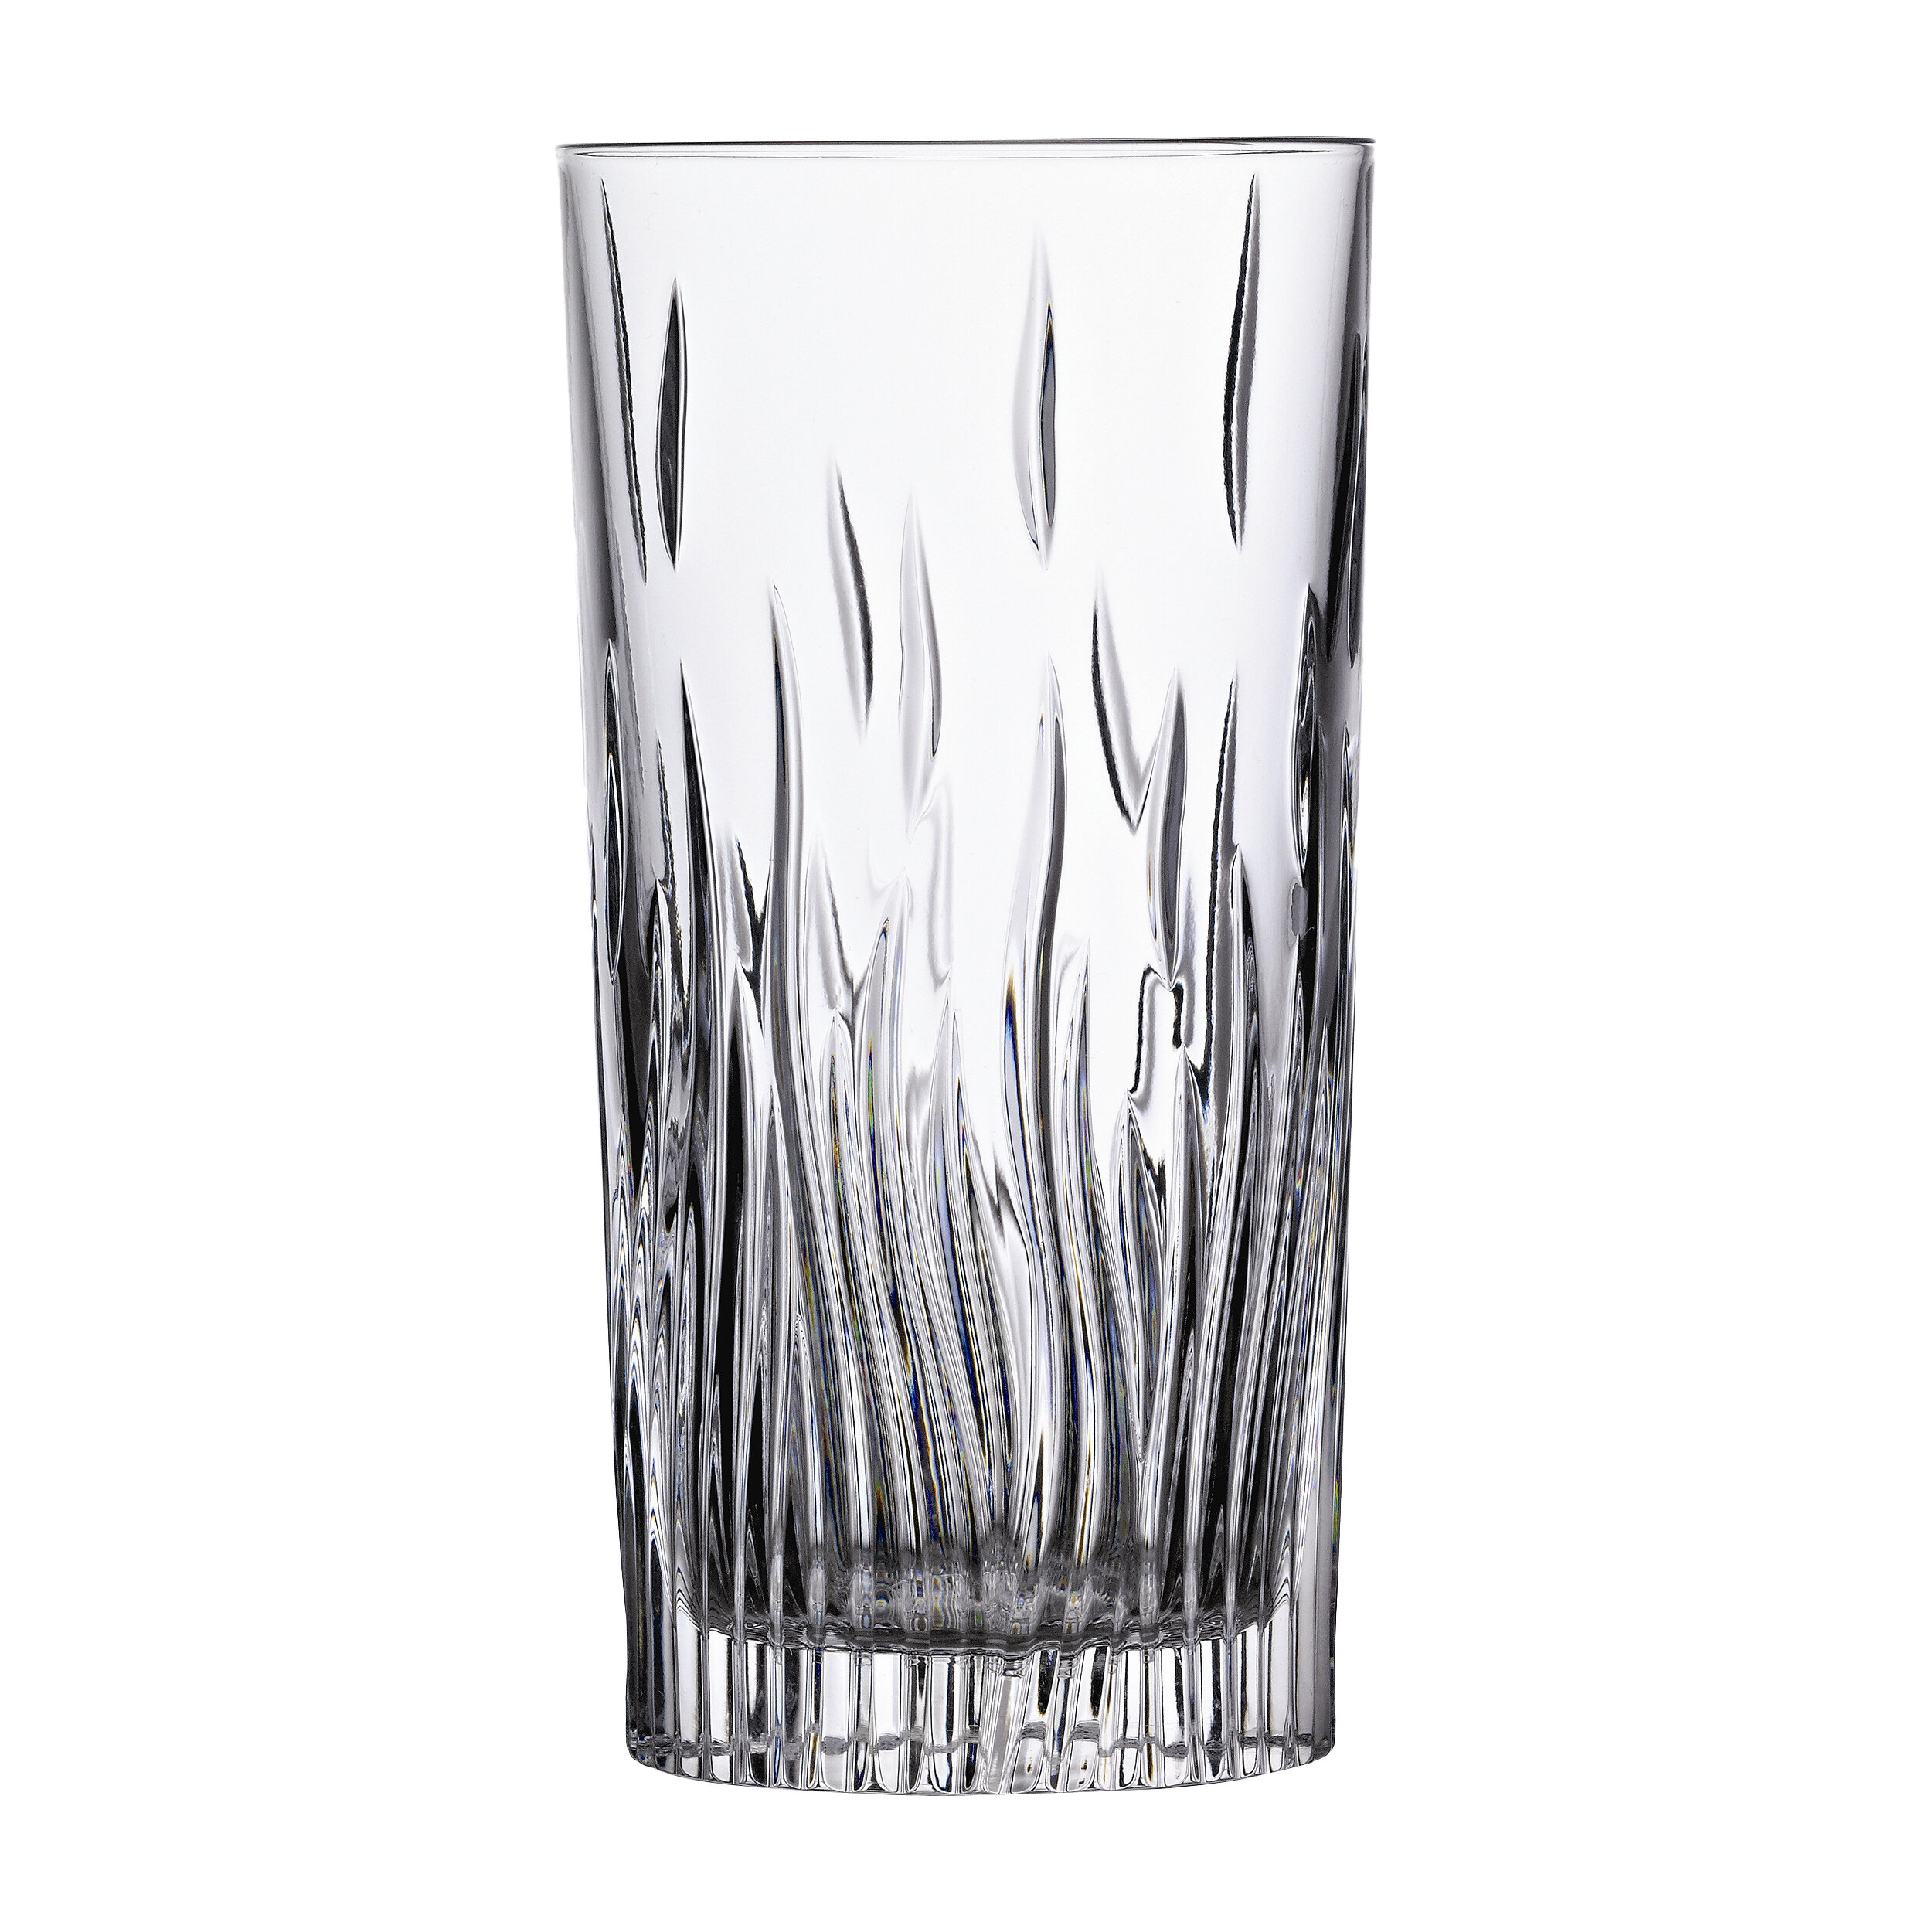 https://assets.wfcdn.com/im/07823635/compr-r85/1774/17741557/lorren-home-trends-rcr-fire-6-piece-11oz-lead-crystal-highball-glass-glassware-set.jpg